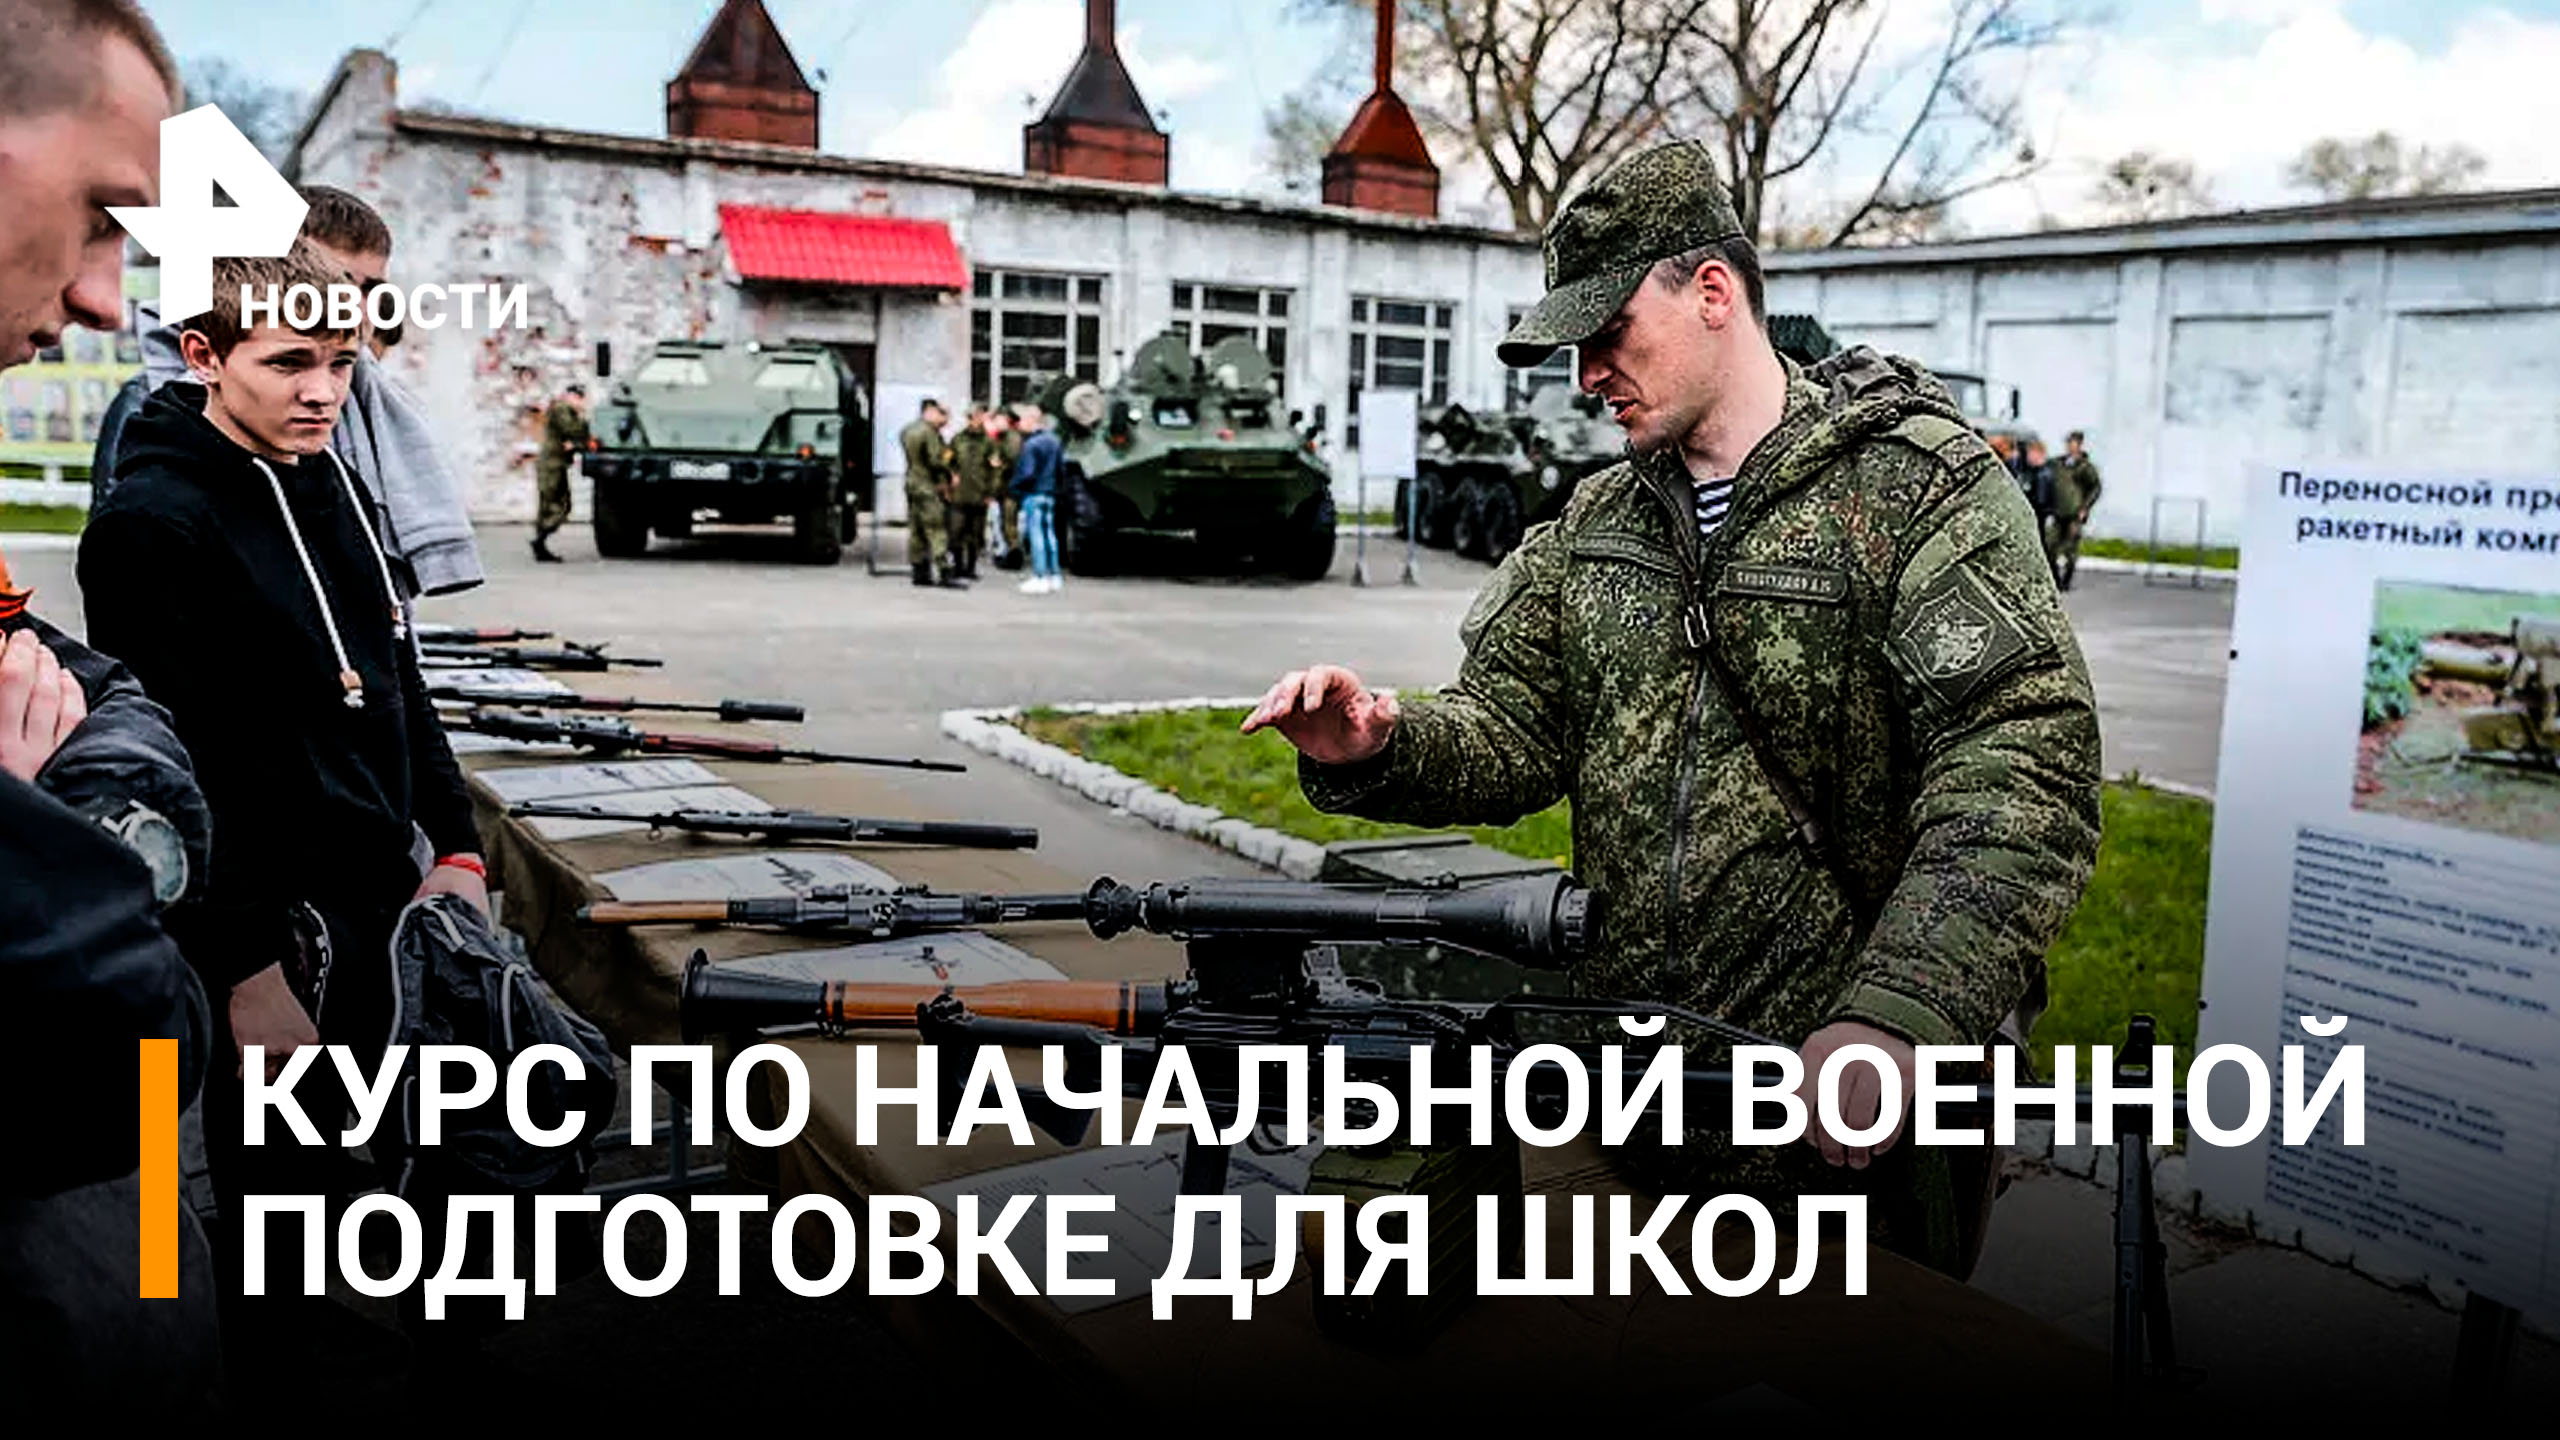 Что известно об идее ввести военную подготовку в школах / РЕН Новости